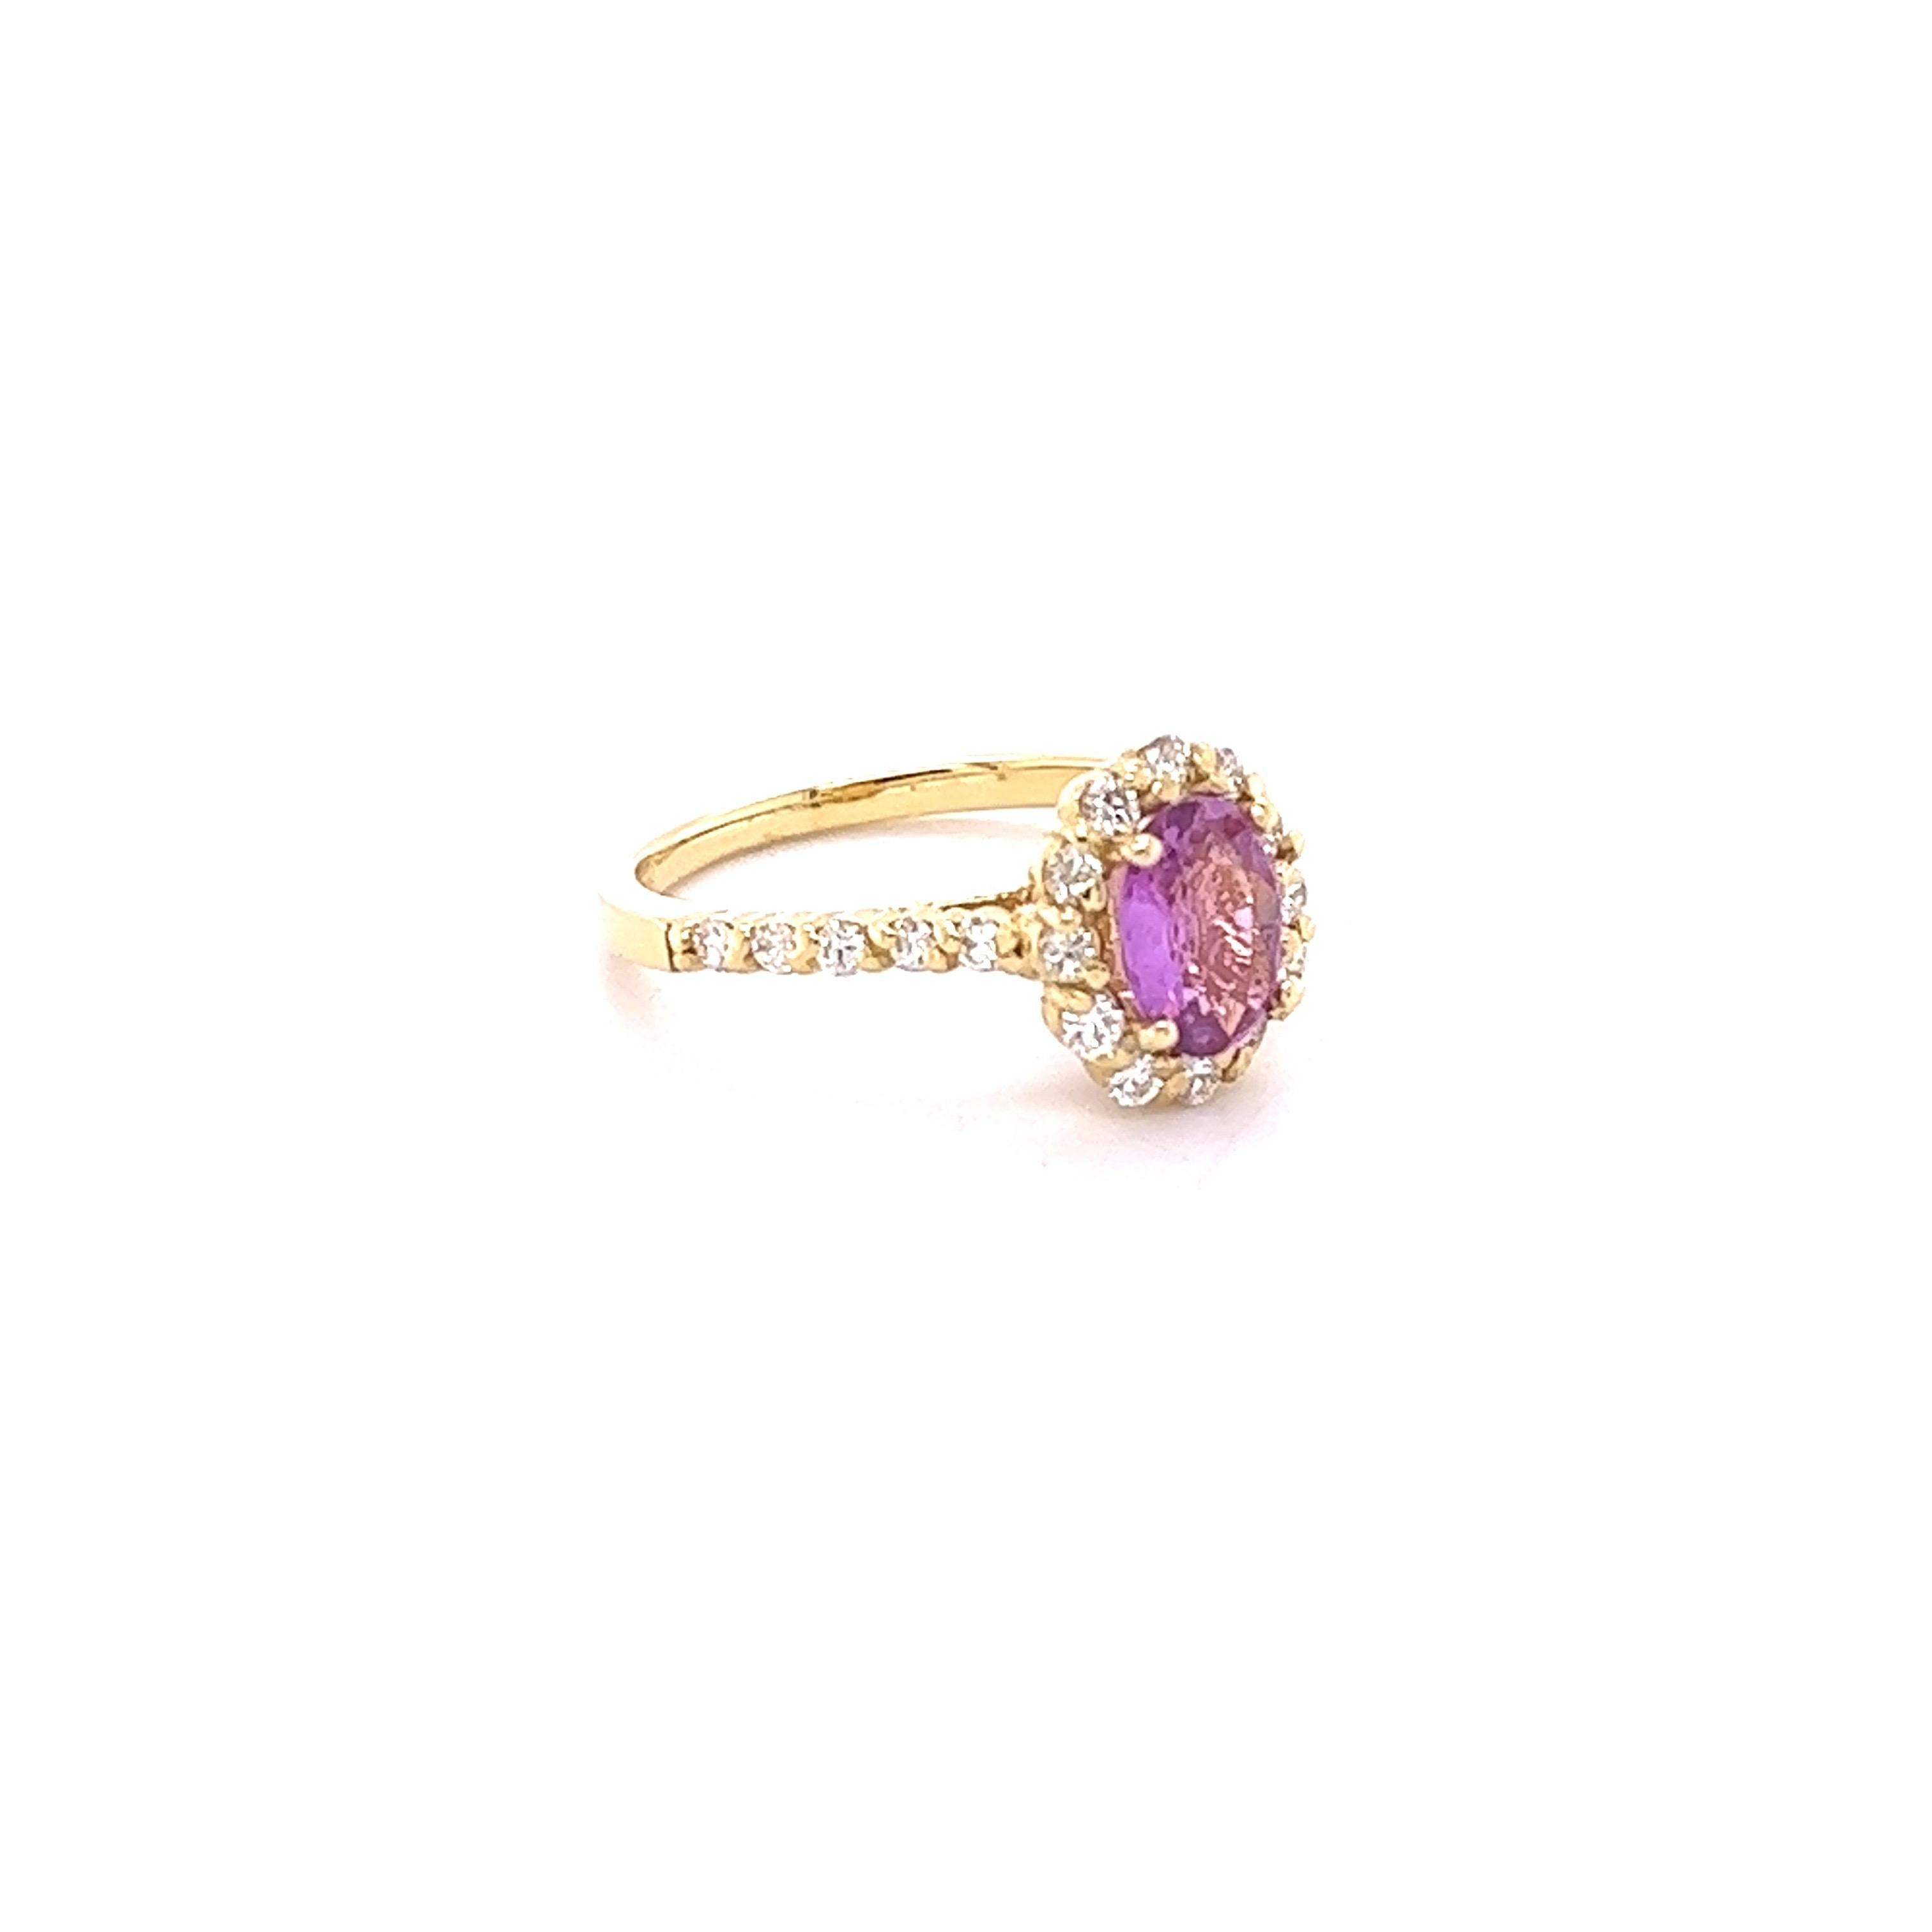 Dieser schöne Ring hat eine natürliche No Heat Oval Cut Pink Sapphire, dass Gewichte 1,11 Karat und misst bei 8 mm x 6 mm.

Der Ring ist mit 24 Diamanten im Rundschliff mit einem Gewicht von 0,52 Karat und einer Reinheit und Farbe von VS/H verziert.